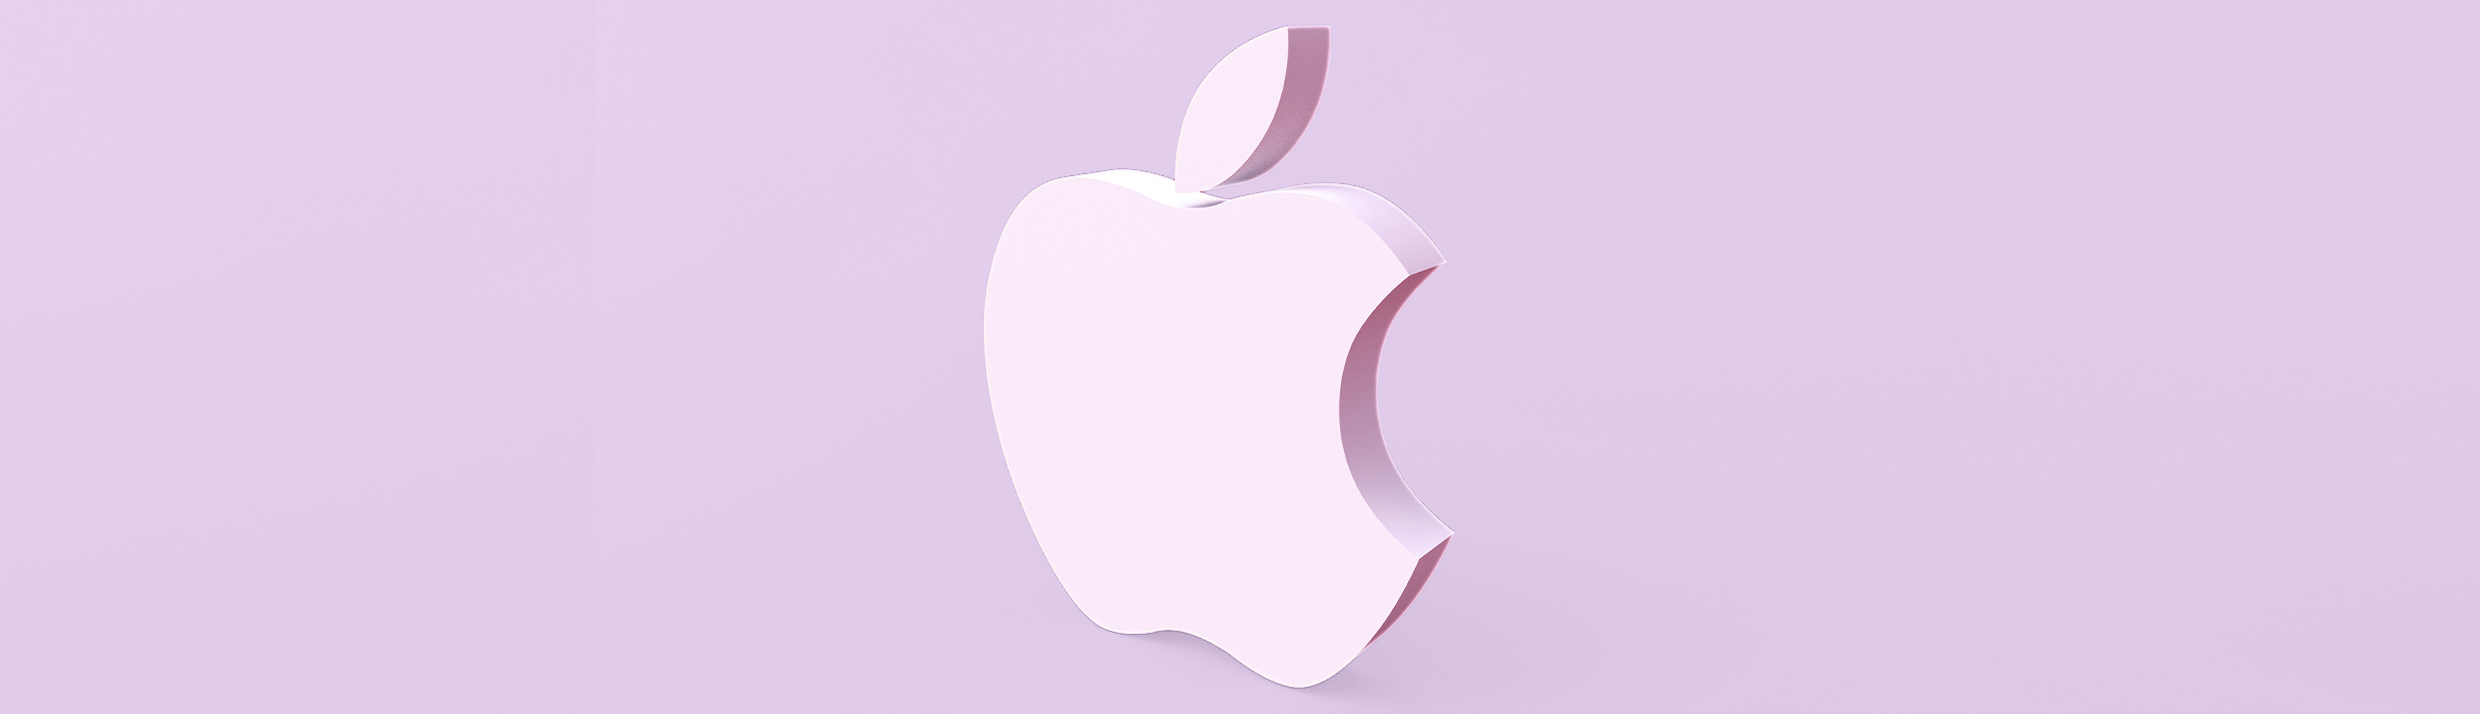 Das Apple-Logo ist zentral positioniert, es ist in einem hellvioletten Farbton gehalten, der auch im Hintergrund.